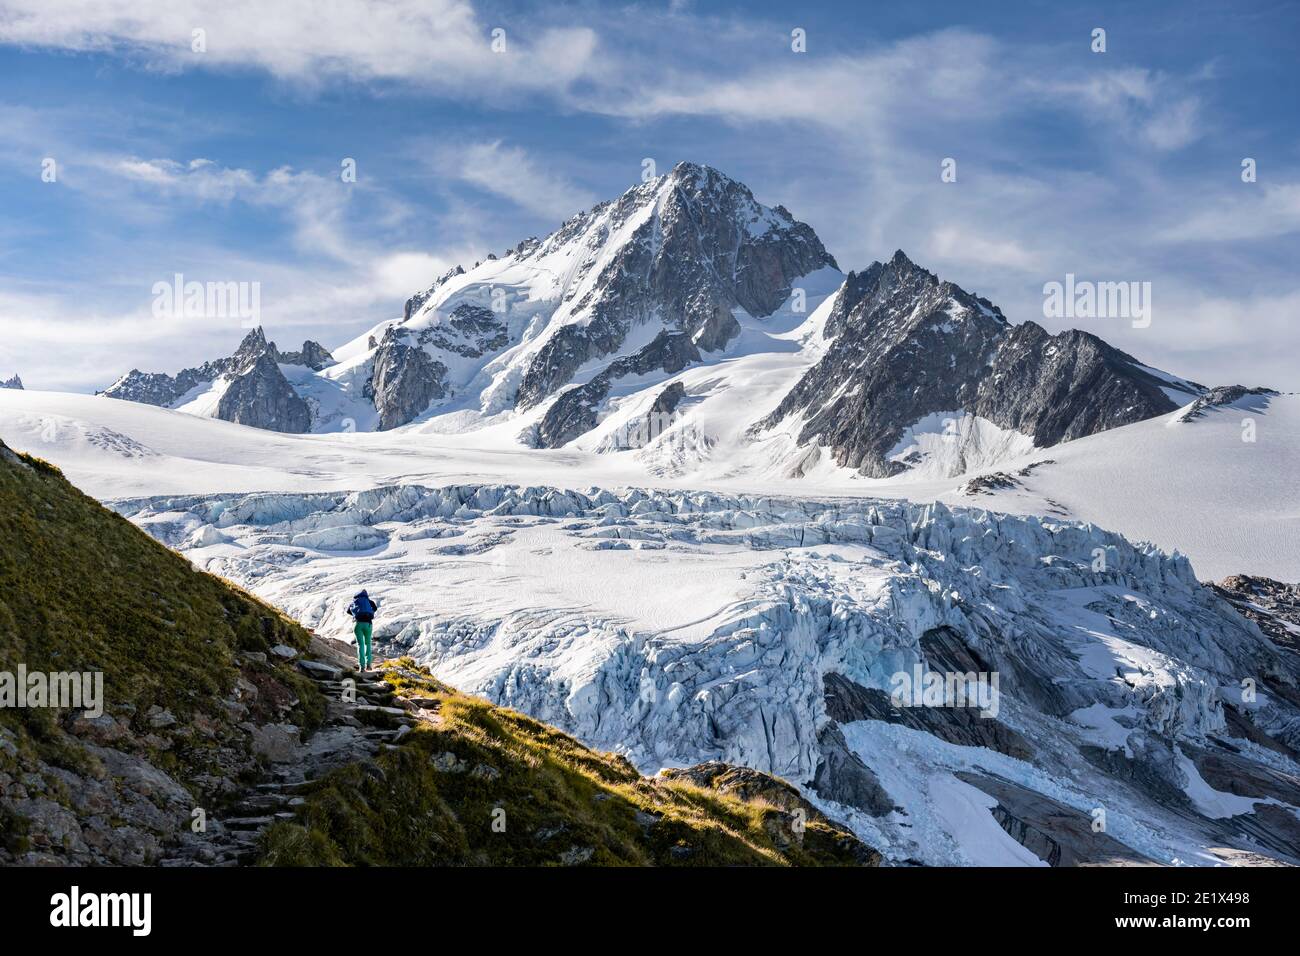 Randonnée sur la piste du glacier du Tour, glacier et sommet de montagne, paysage alpin, aiguille de Chardonnet, Chamonix, haute-Savoie, France Banque D'Images